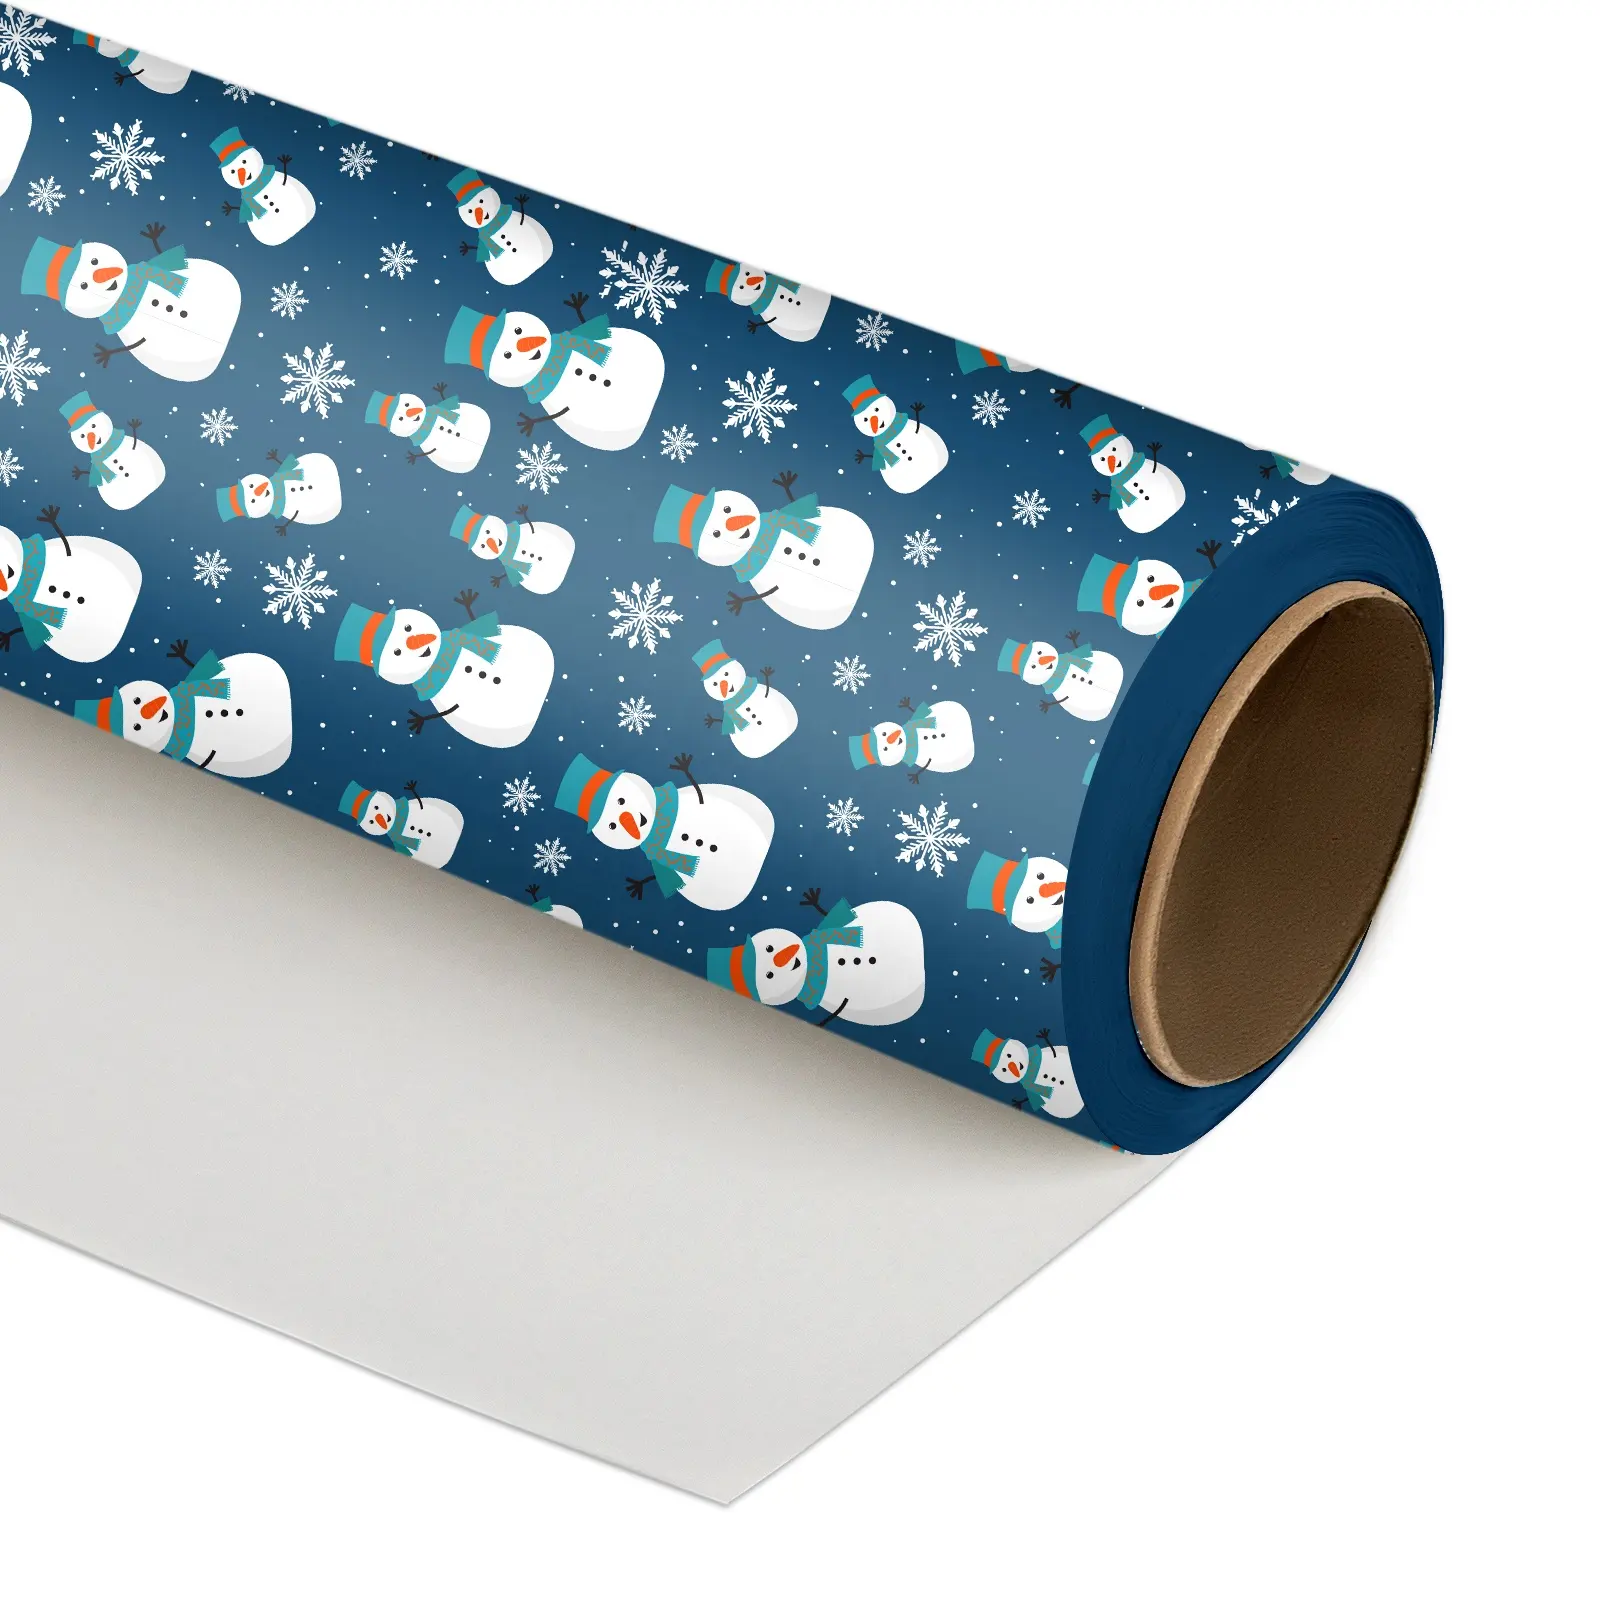 輸出クリスマスホリデー青い雪だるま厚く80gsmギフト包装紙